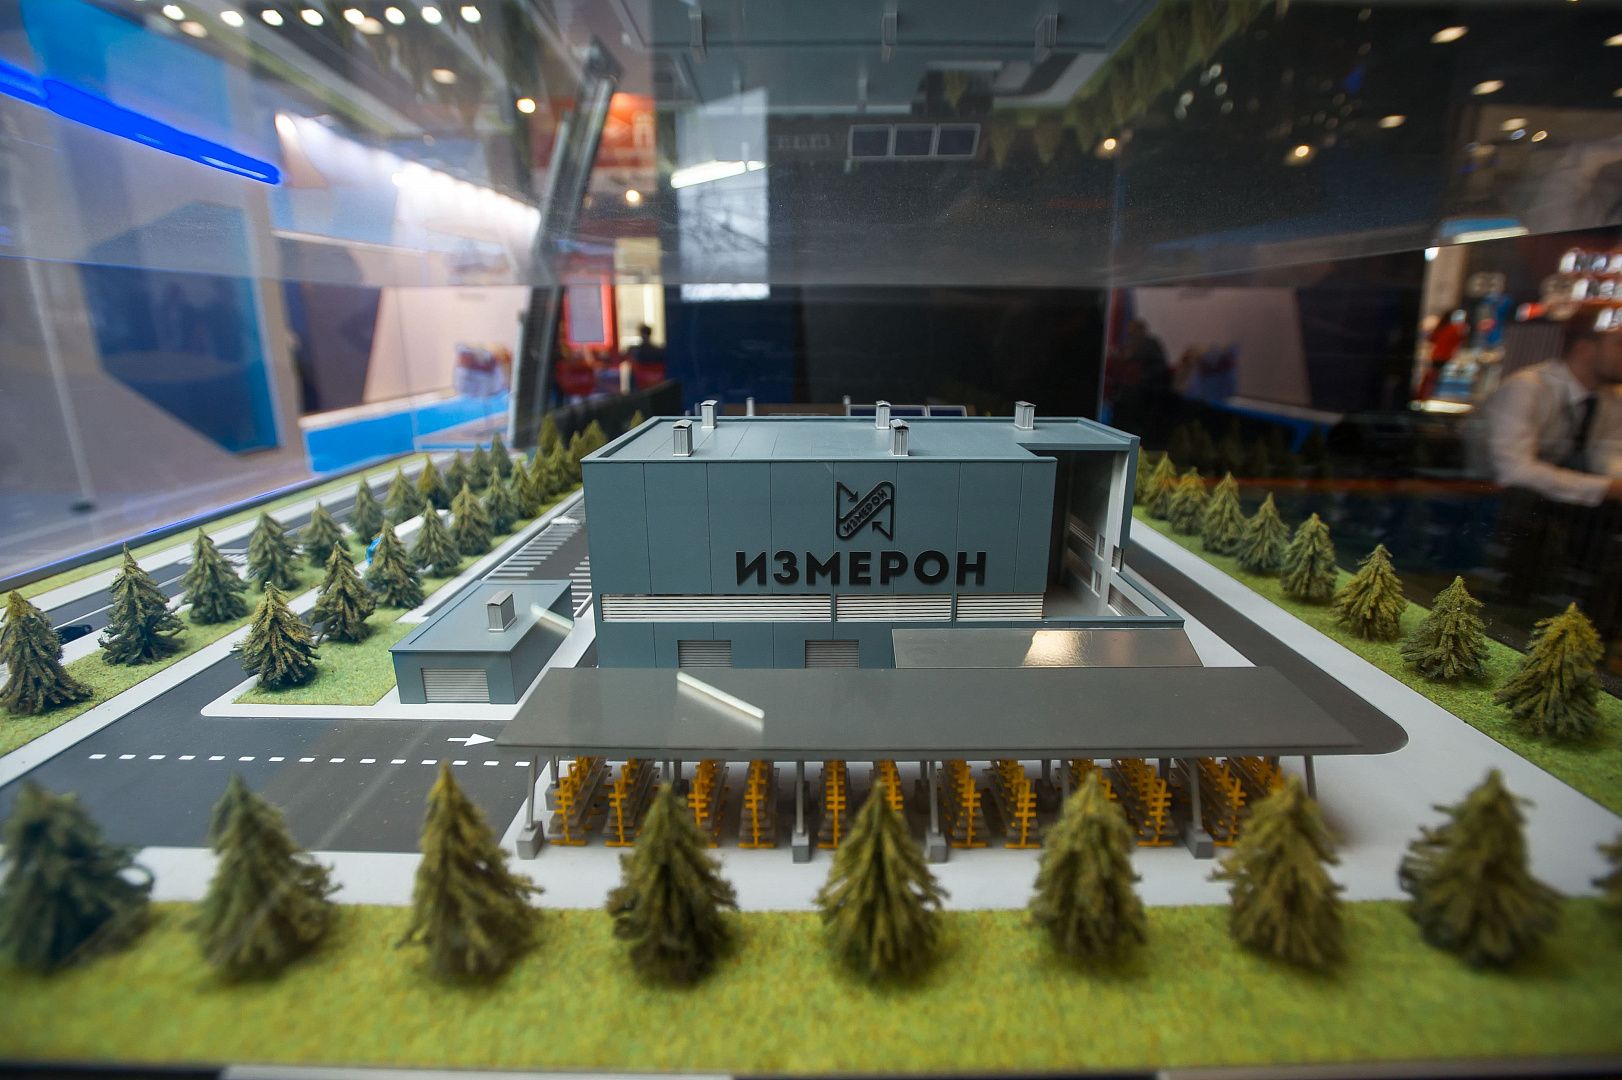 «Измерон» представил на Петербургском Международном Газовом Форуме образцы новейшего оборудования для нефтегазовой отрасли - фото 1